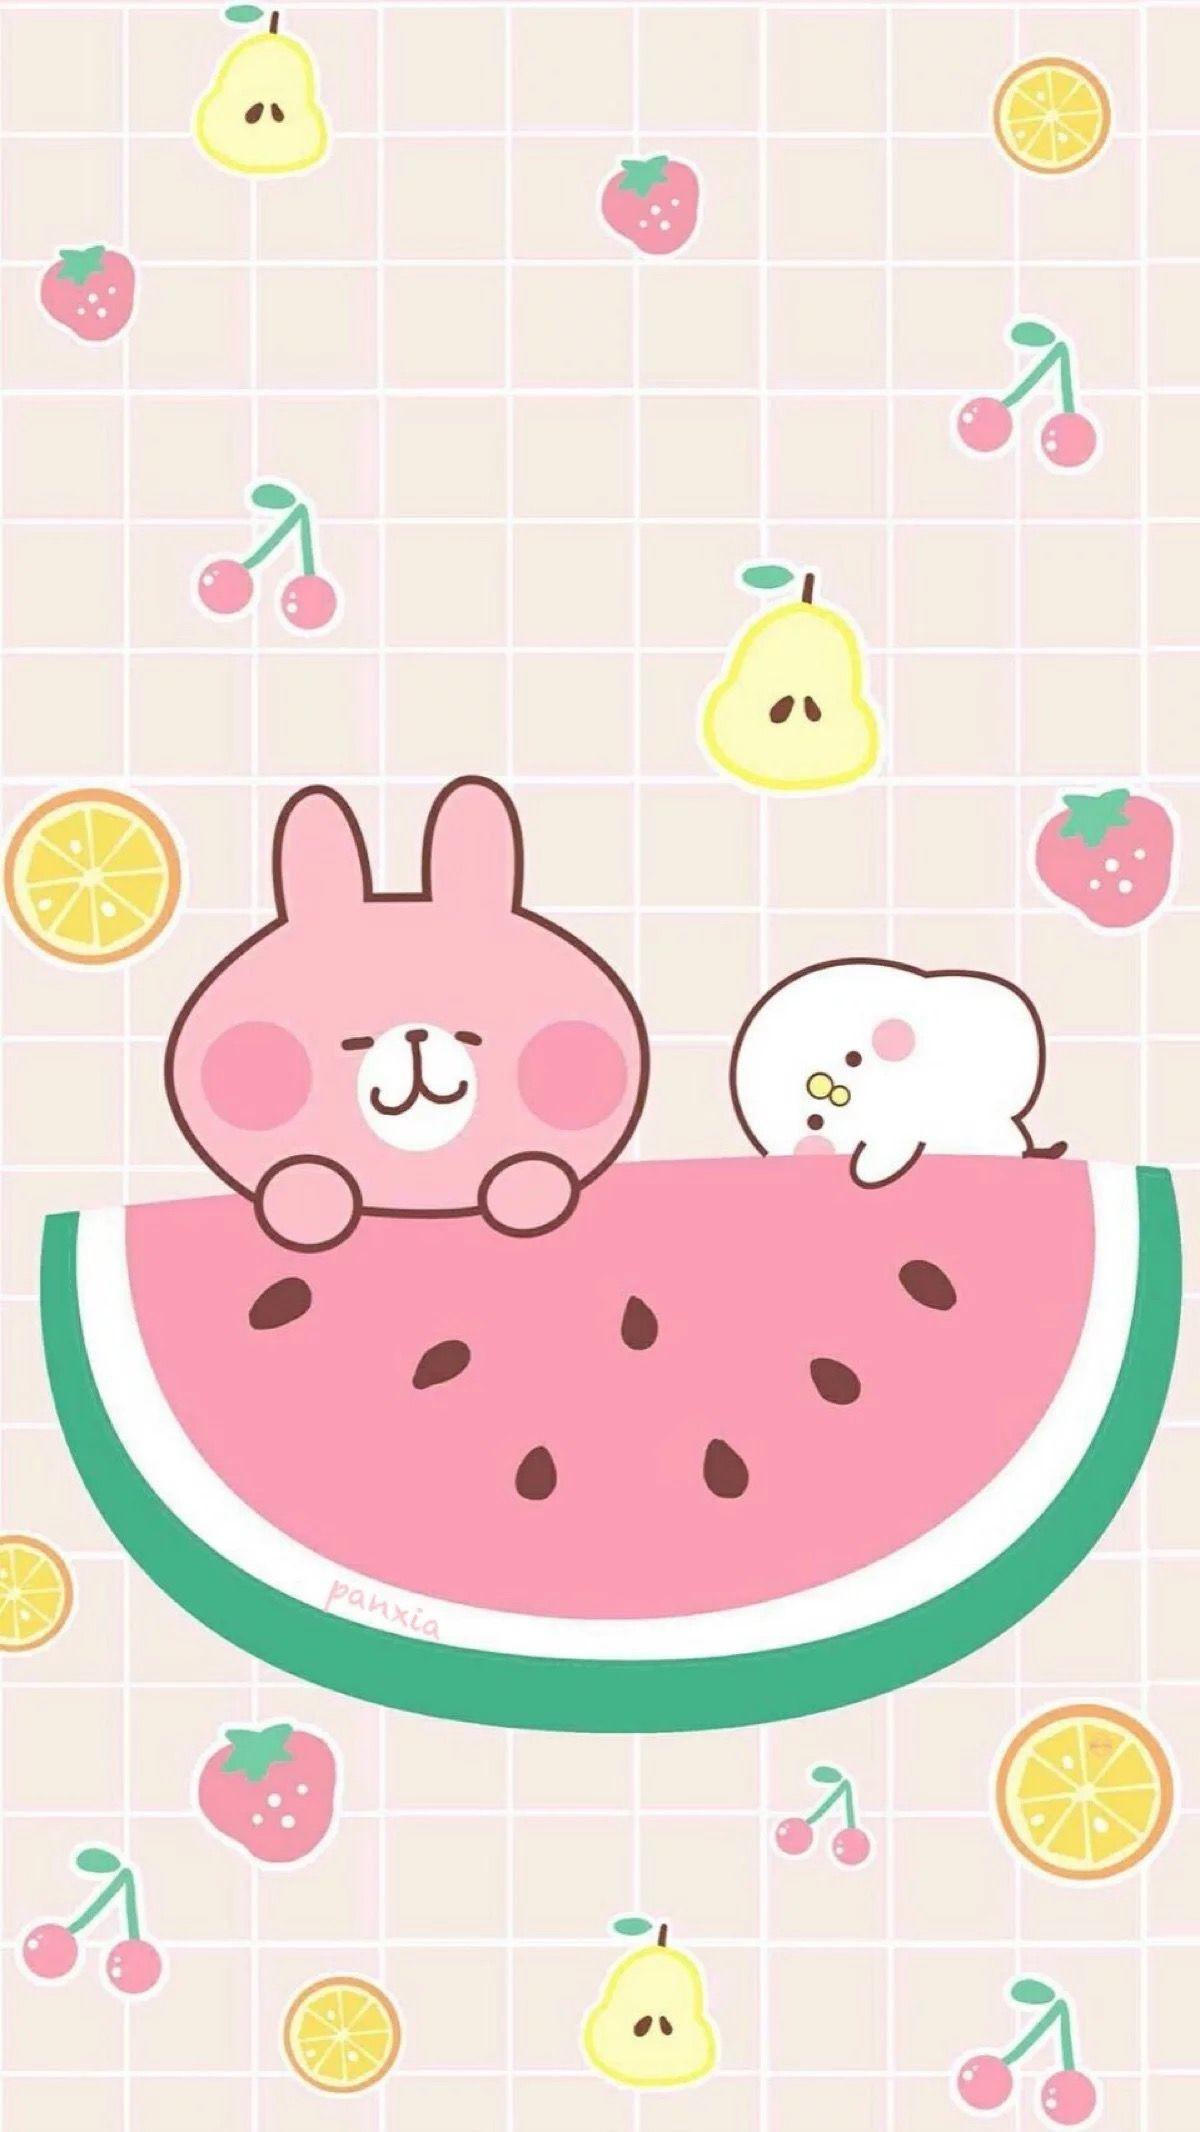 Cute IPad Pro  Pink Girly  Artsy aesthetic ipad cute HD phone wallpaper   Pxfuel